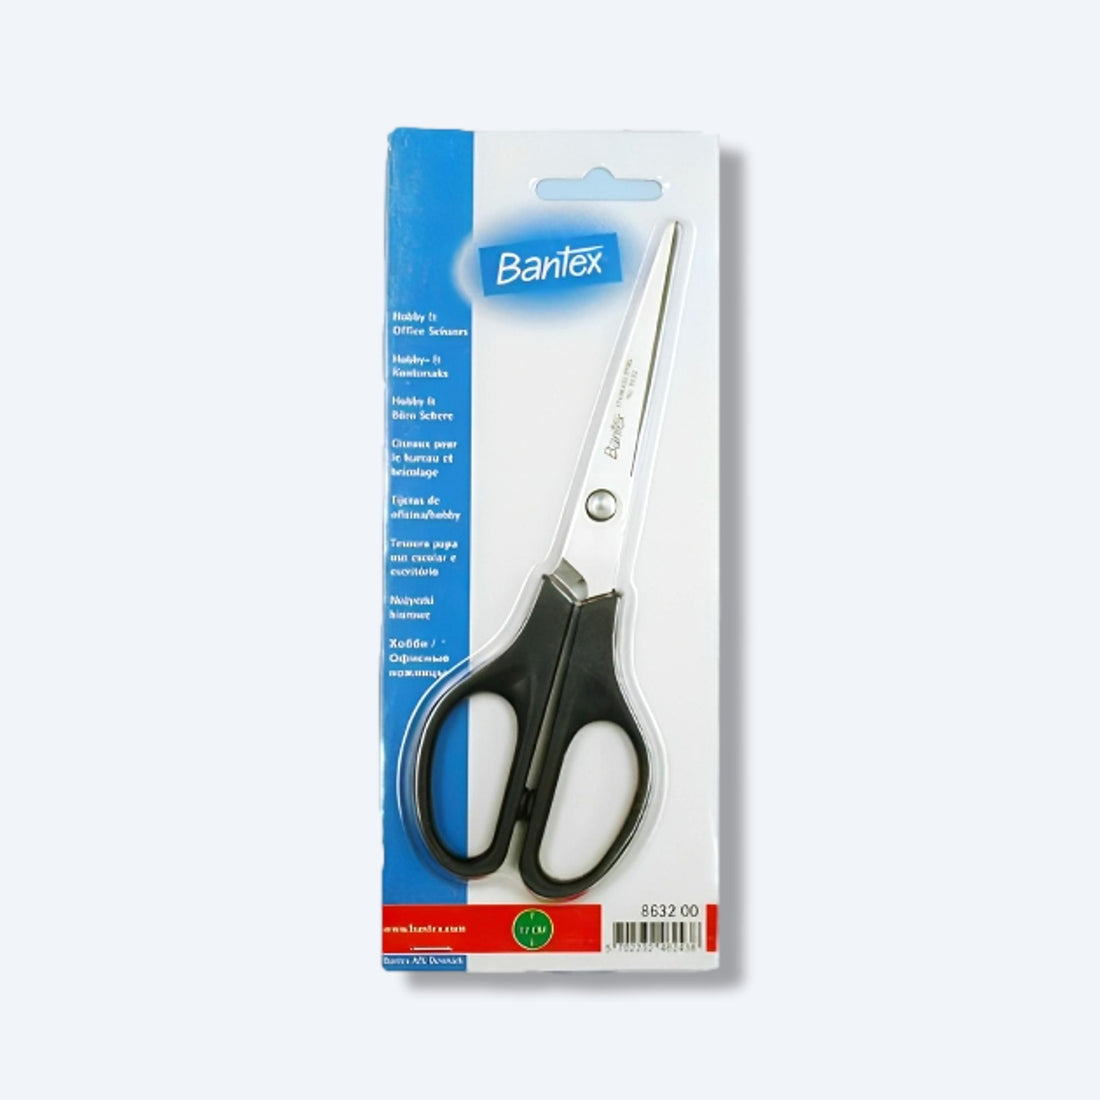 Bantex黑色剪刀8632-00的包裝圖，標準17cm尺寸，是辦公和家庭用途的完美選擇。